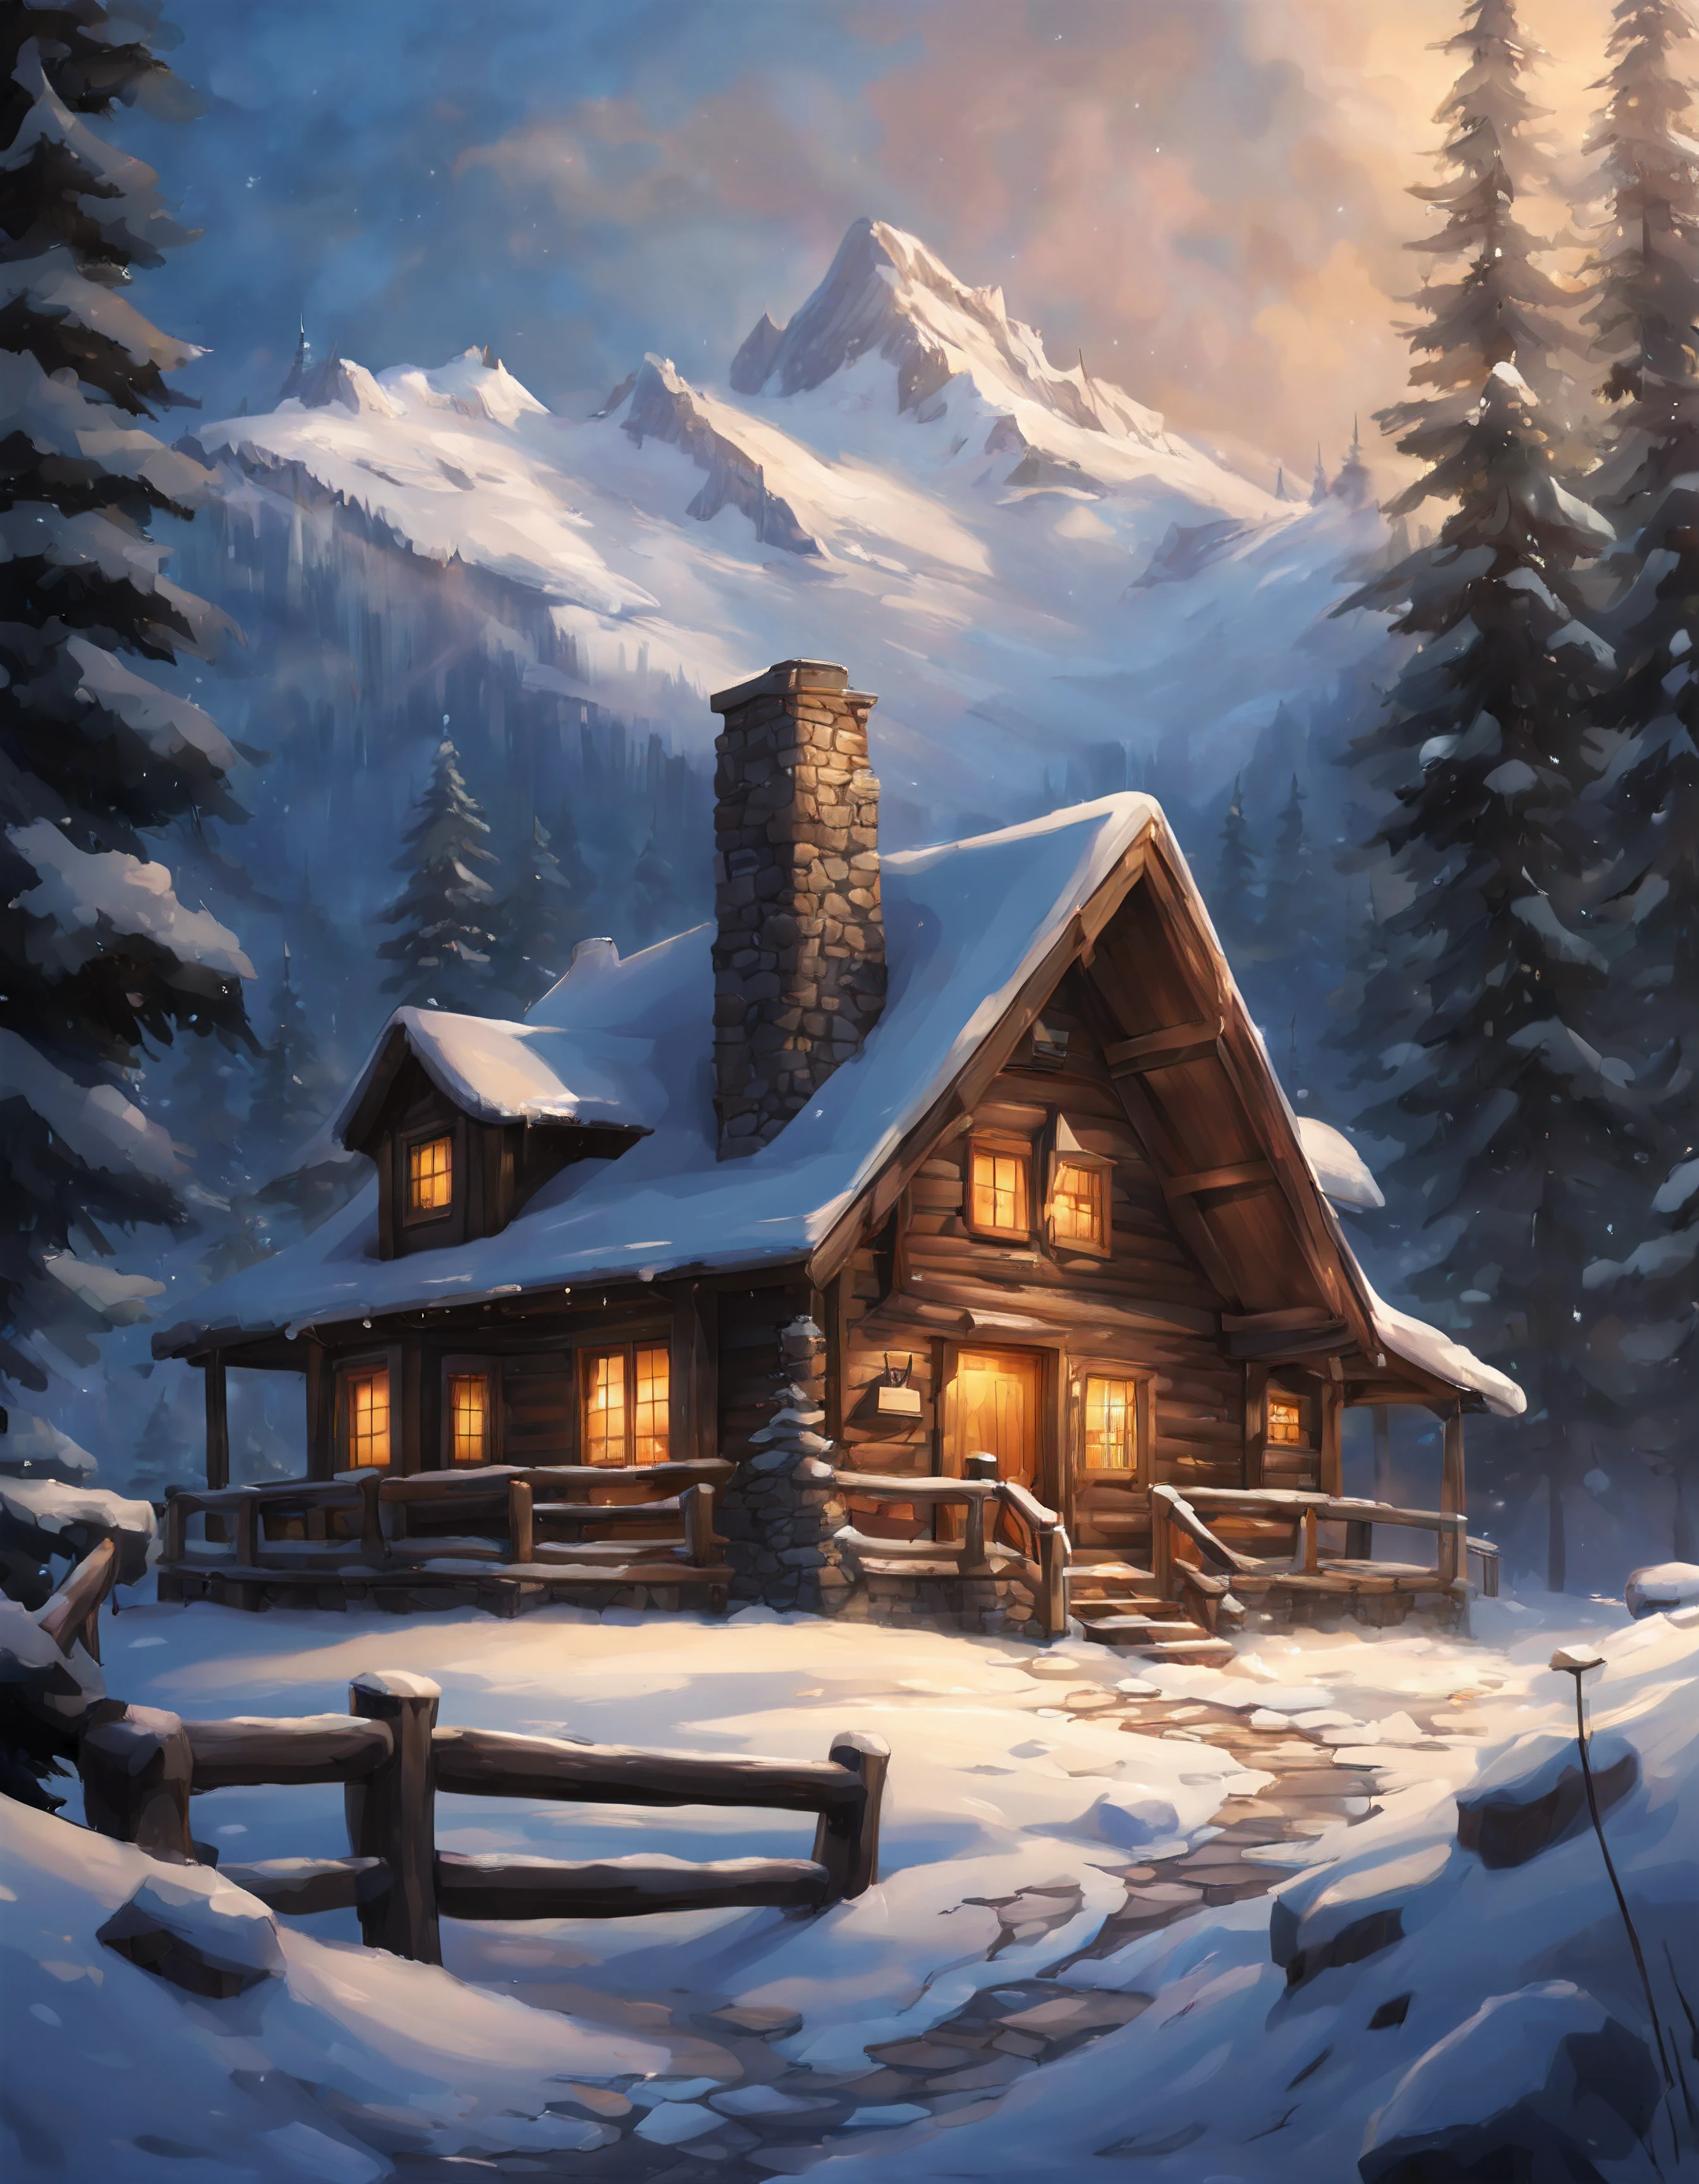 Una cabaña de montaña aislada, enclavado entre imponentes picos, rodeado de nieve prístina. El humo sube suavemente desde la chimenea., y una luz cálida se derrama desde las ventanas, invitándote a buscar refugio en su acogedor abrazo. Serenidad rústica, paraíso cubierto de nieve, aislamiento tranquilo, retiro alpino, soledad idílica, realismo animado, ilustración perfecta